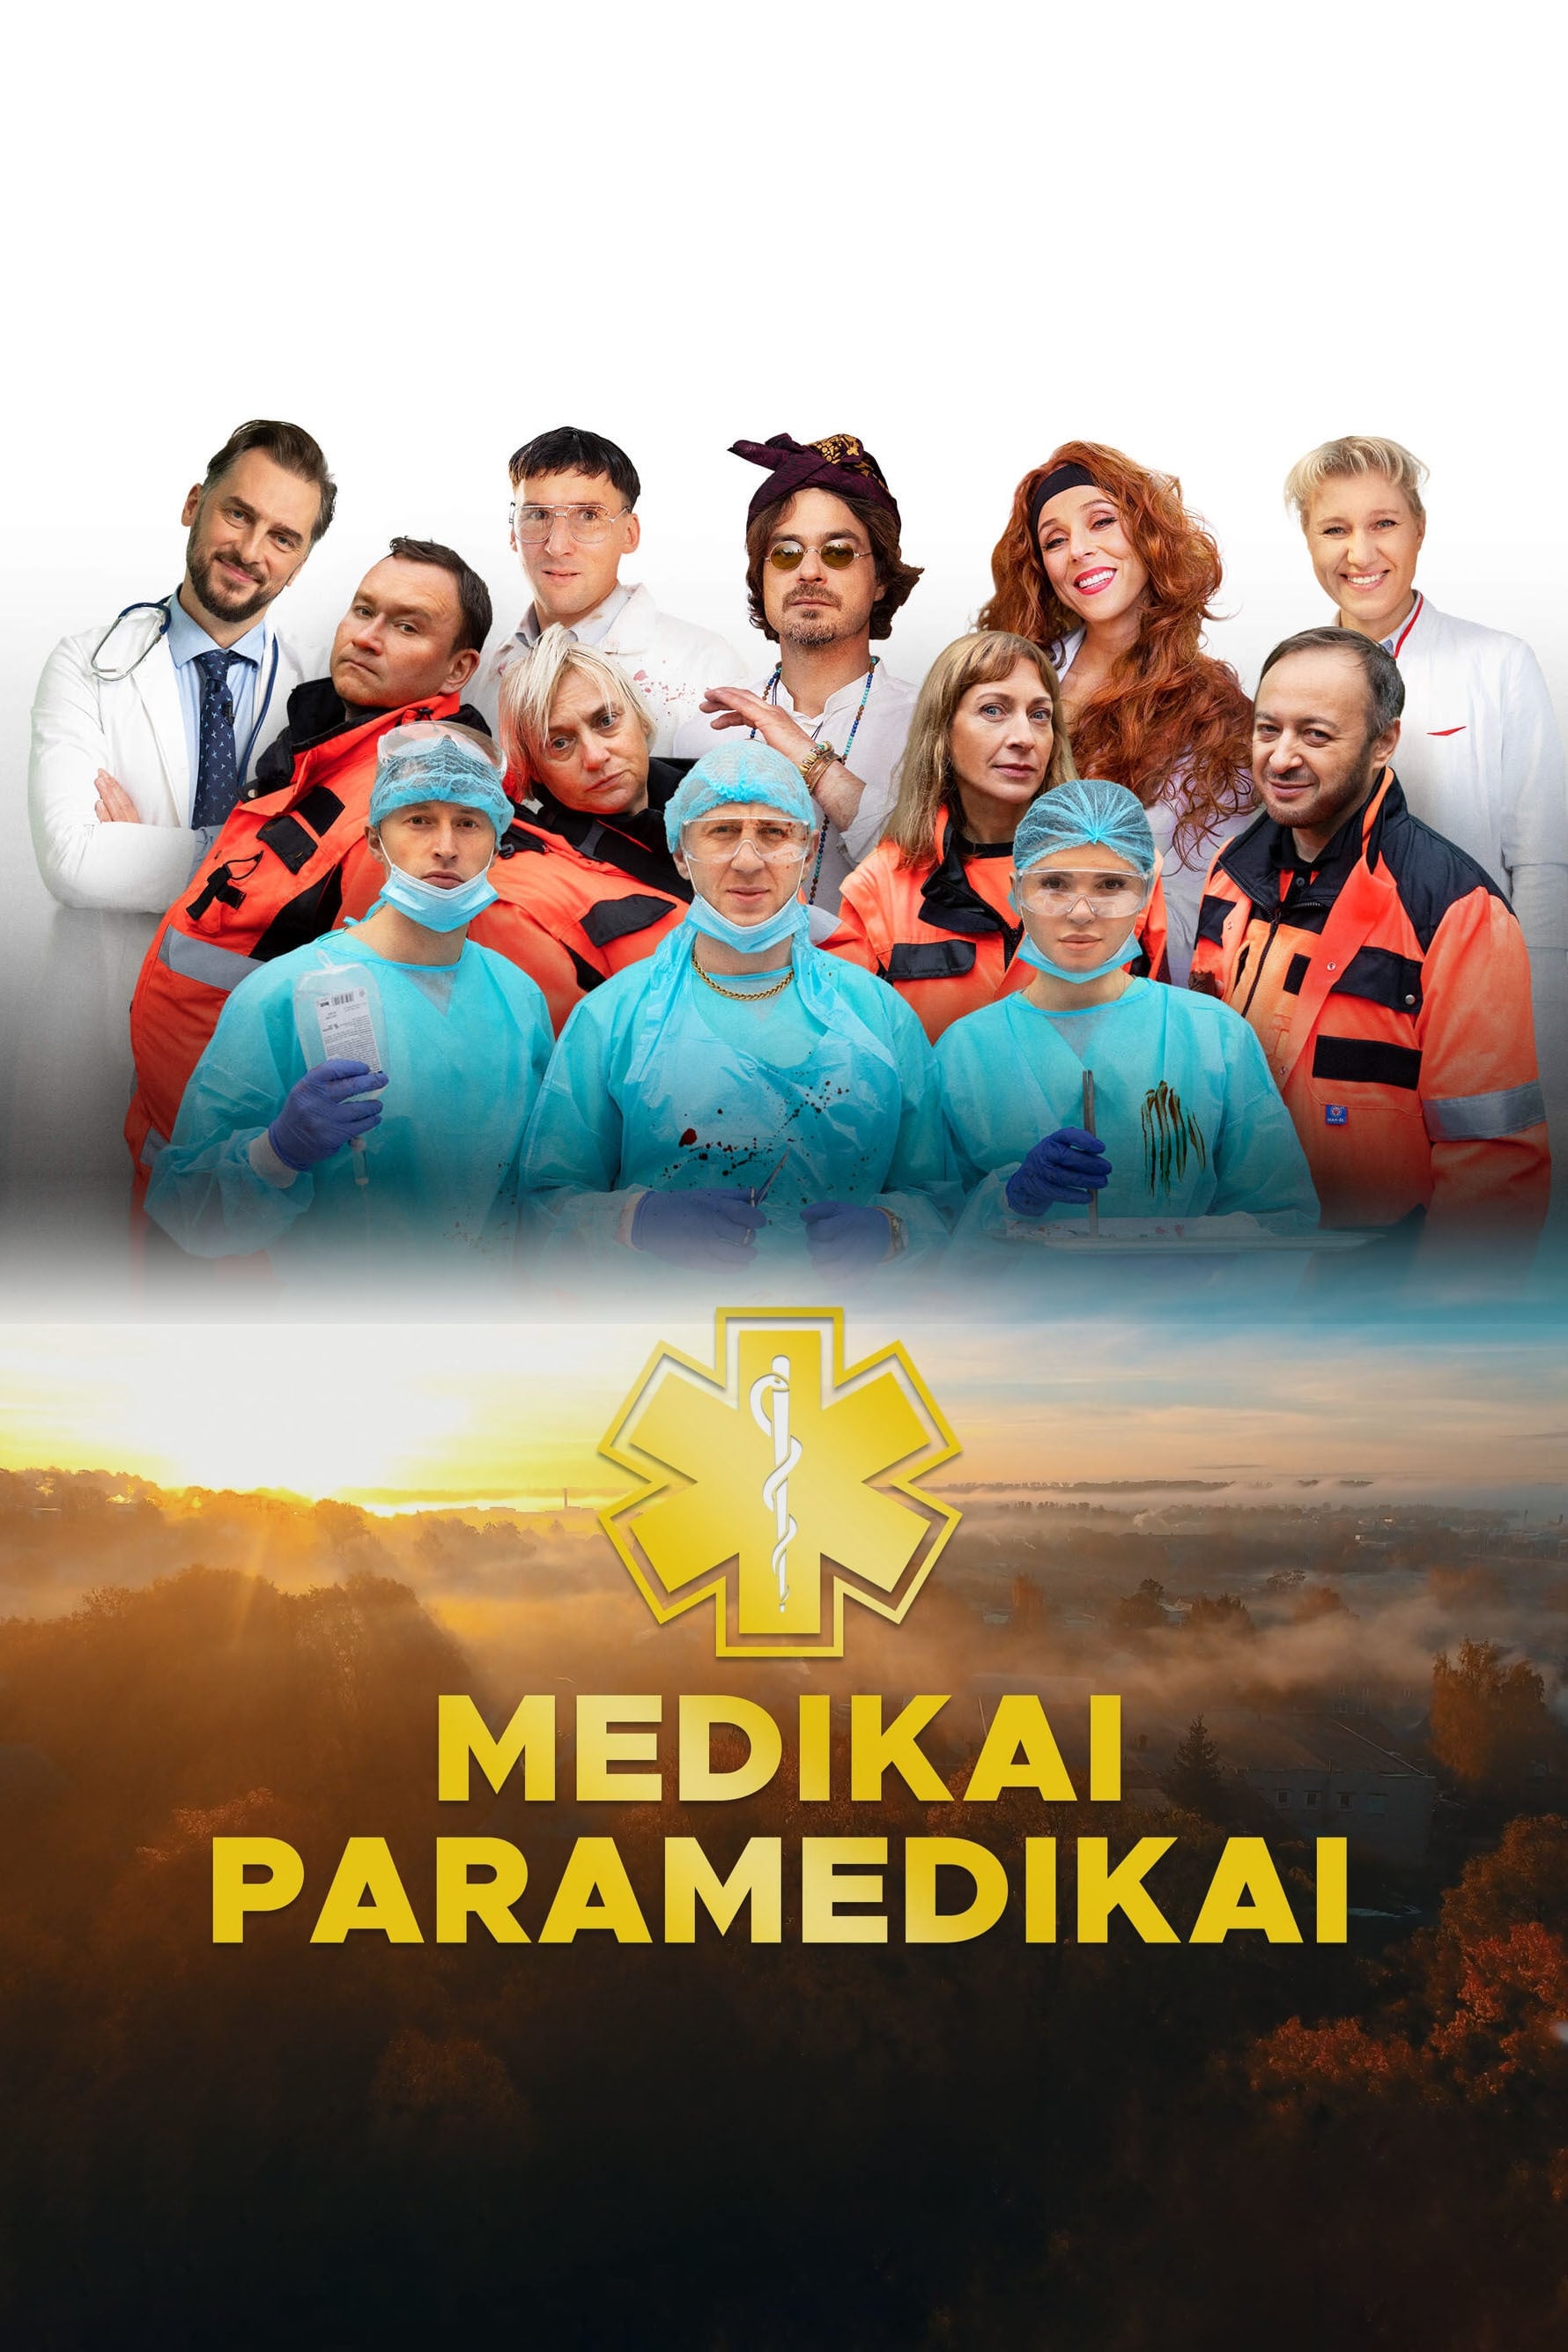 Medikai paramedikai